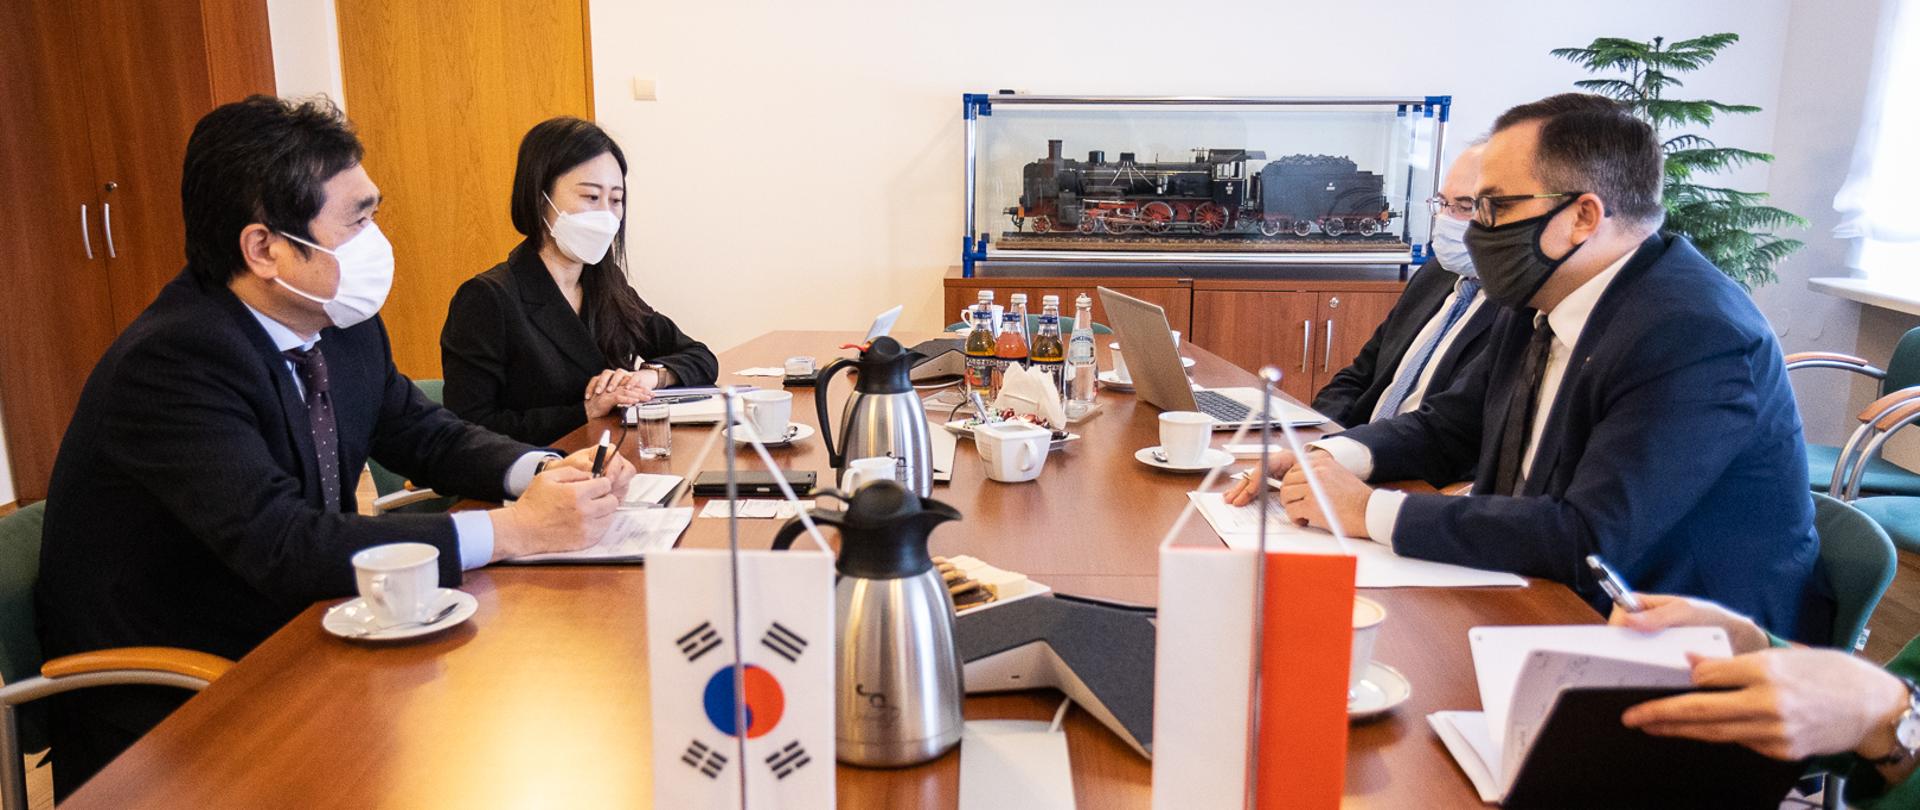 Polsko-koreańskie rozmowy o współpracy przy CPK